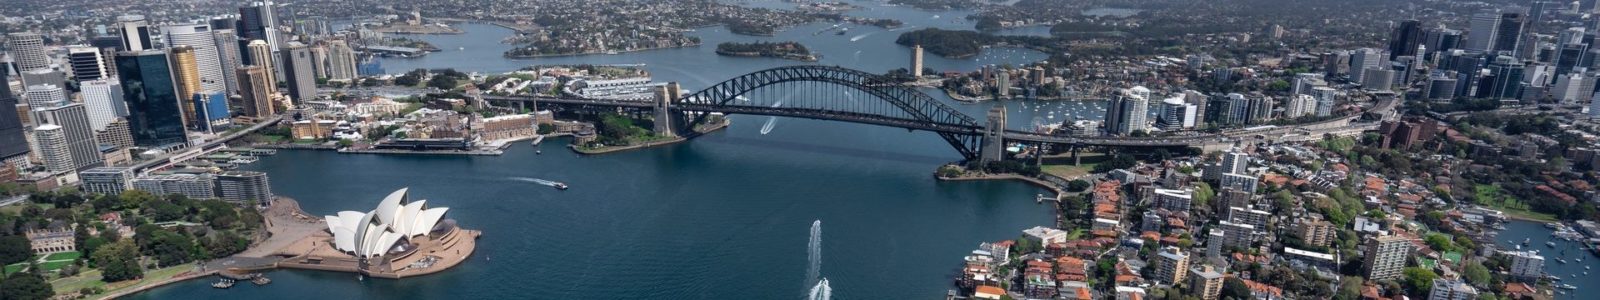 Tourism Australia Success Story插图2